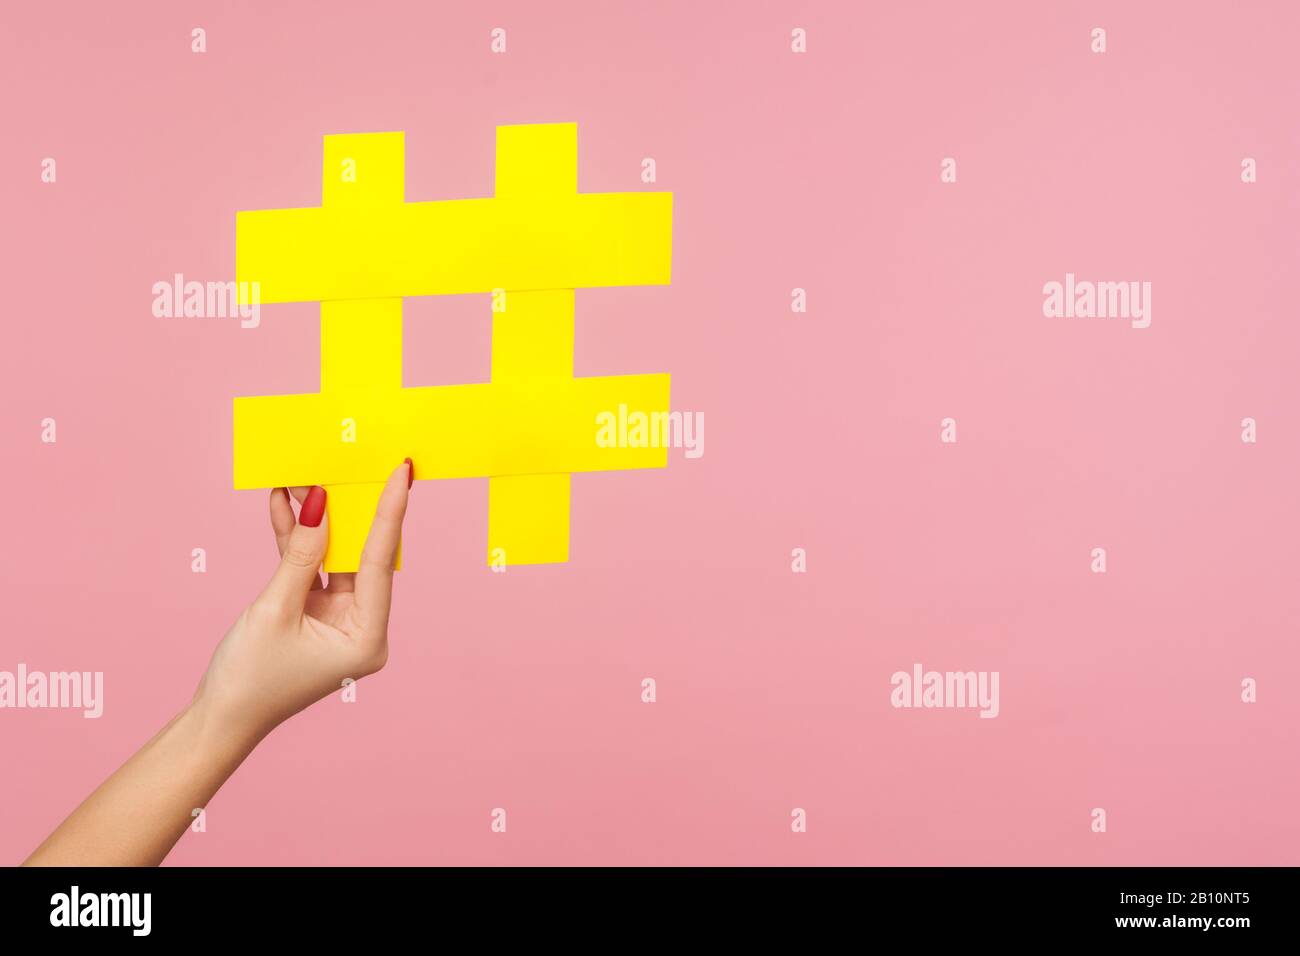 Gros plan de main tenant le grand symbole hashtag de papier jaune à côté de l'espace de copie, signe de hachage de contenu médiatique célèbre, marketing de médias sociaux et promo de blog Banque D'Images